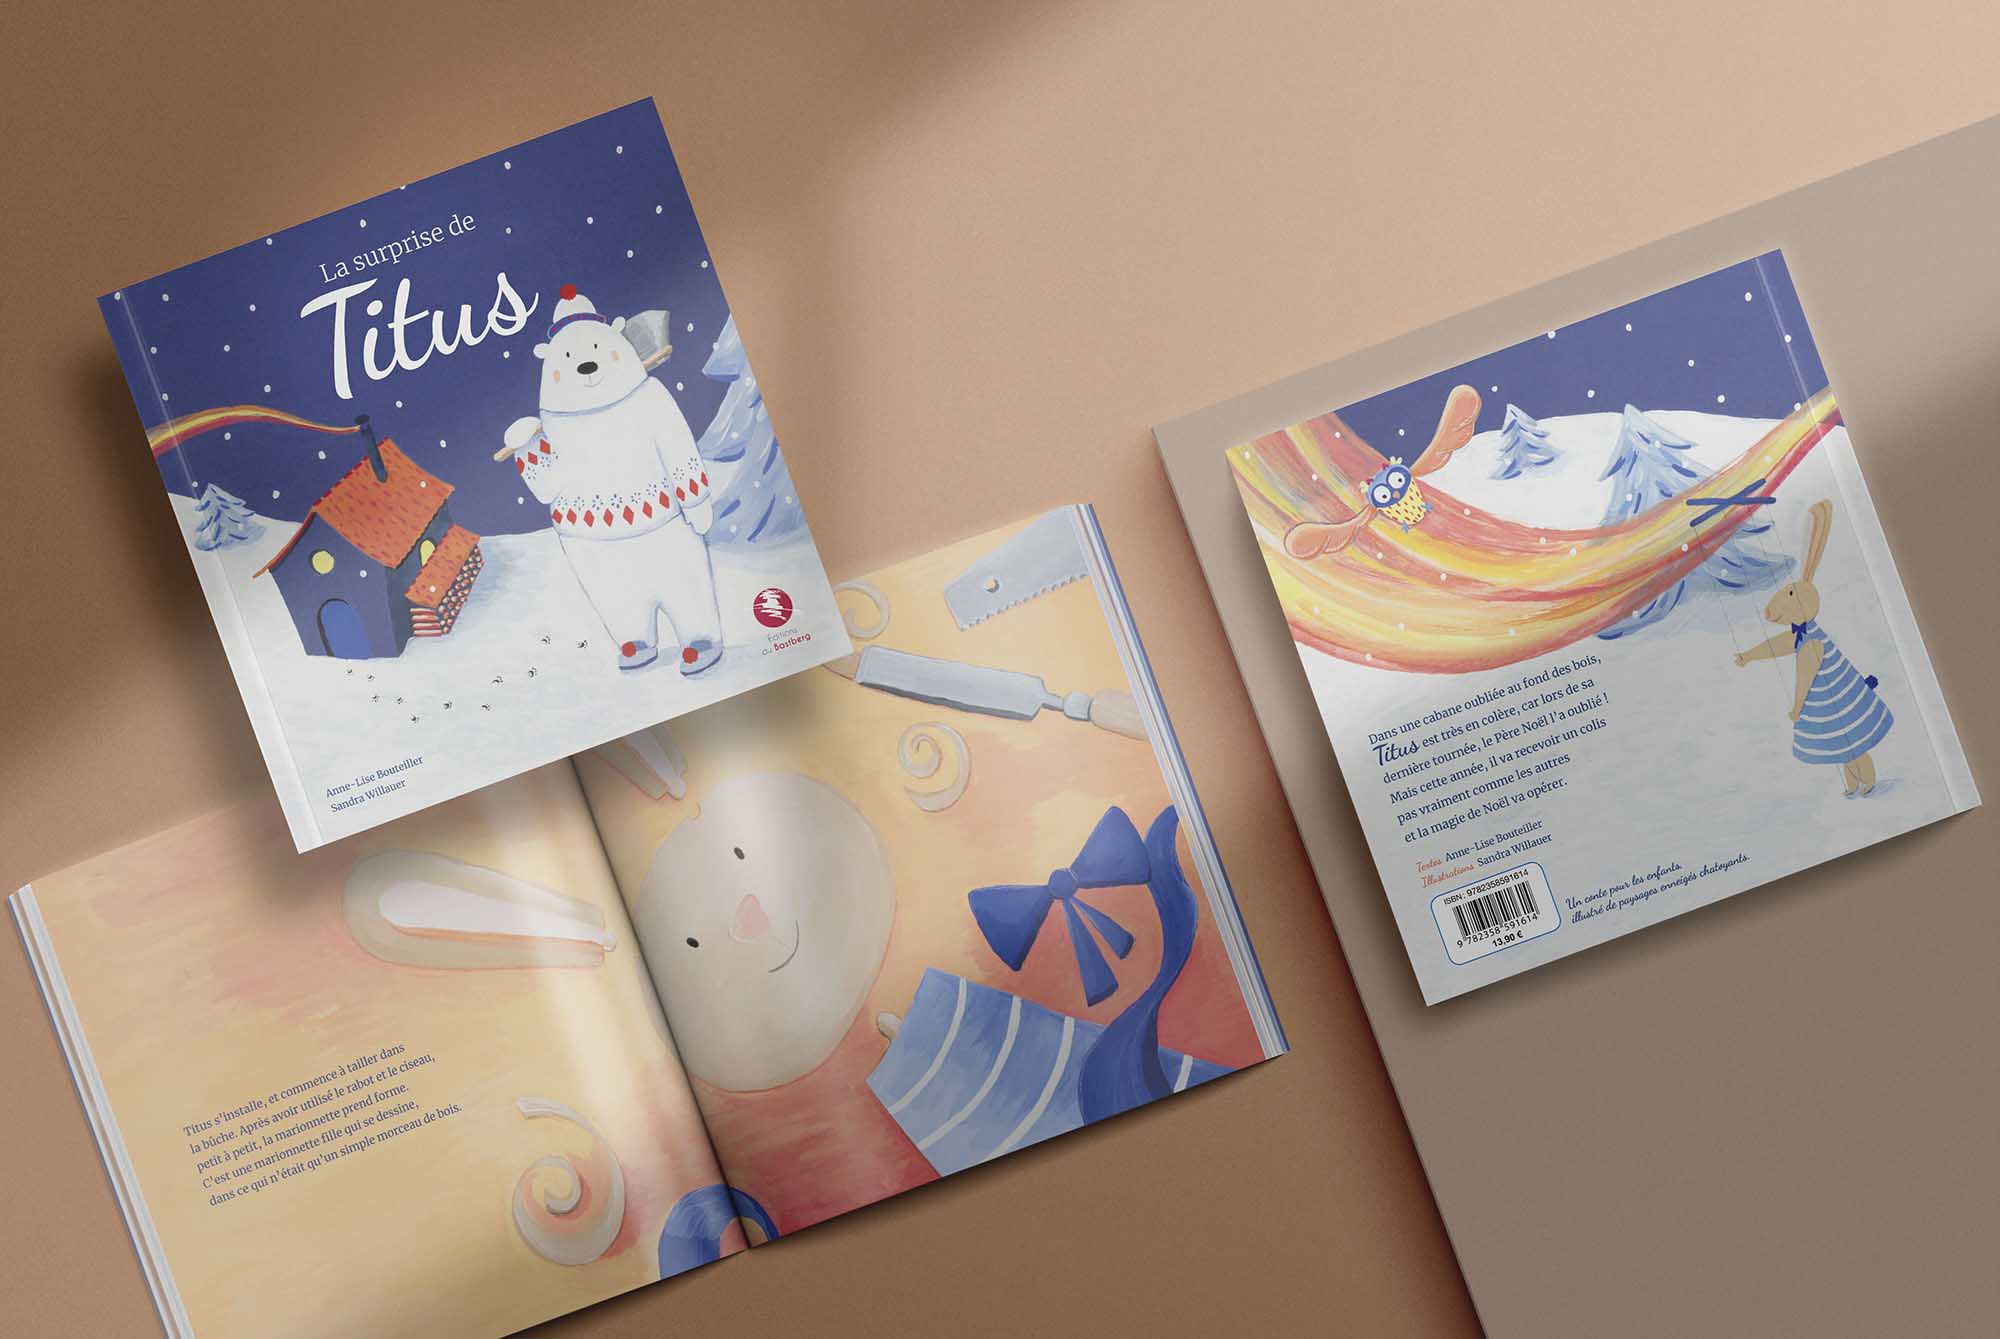 aperçu de l'album illustré La surprise de Titus, éditions du Bastberg, avec un personnage ours polaire, et des illustrations à la gouache